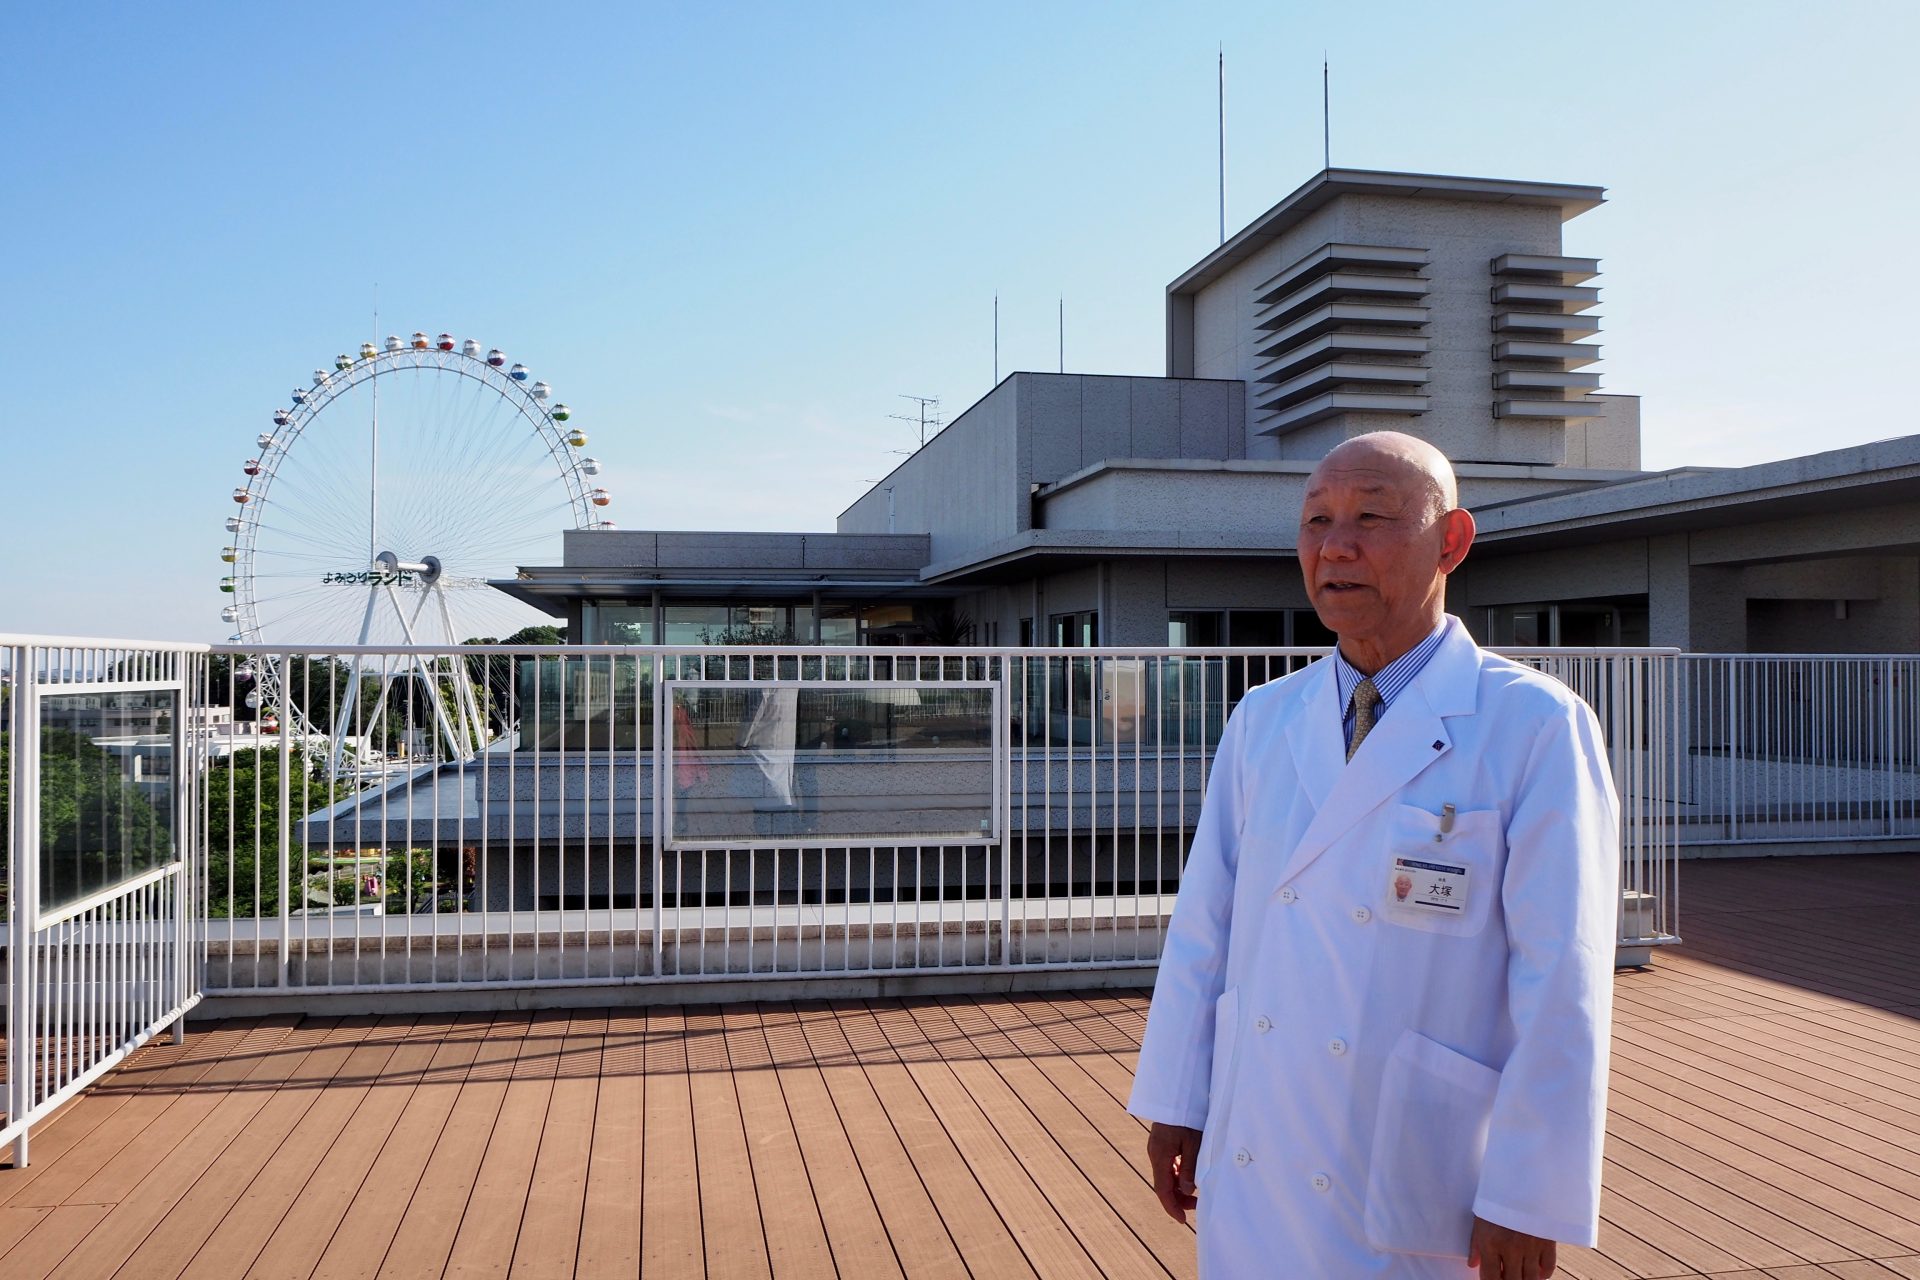 大塚宣夫先生が考える「高齢者医療」と「非マジメ老後のすすめ」